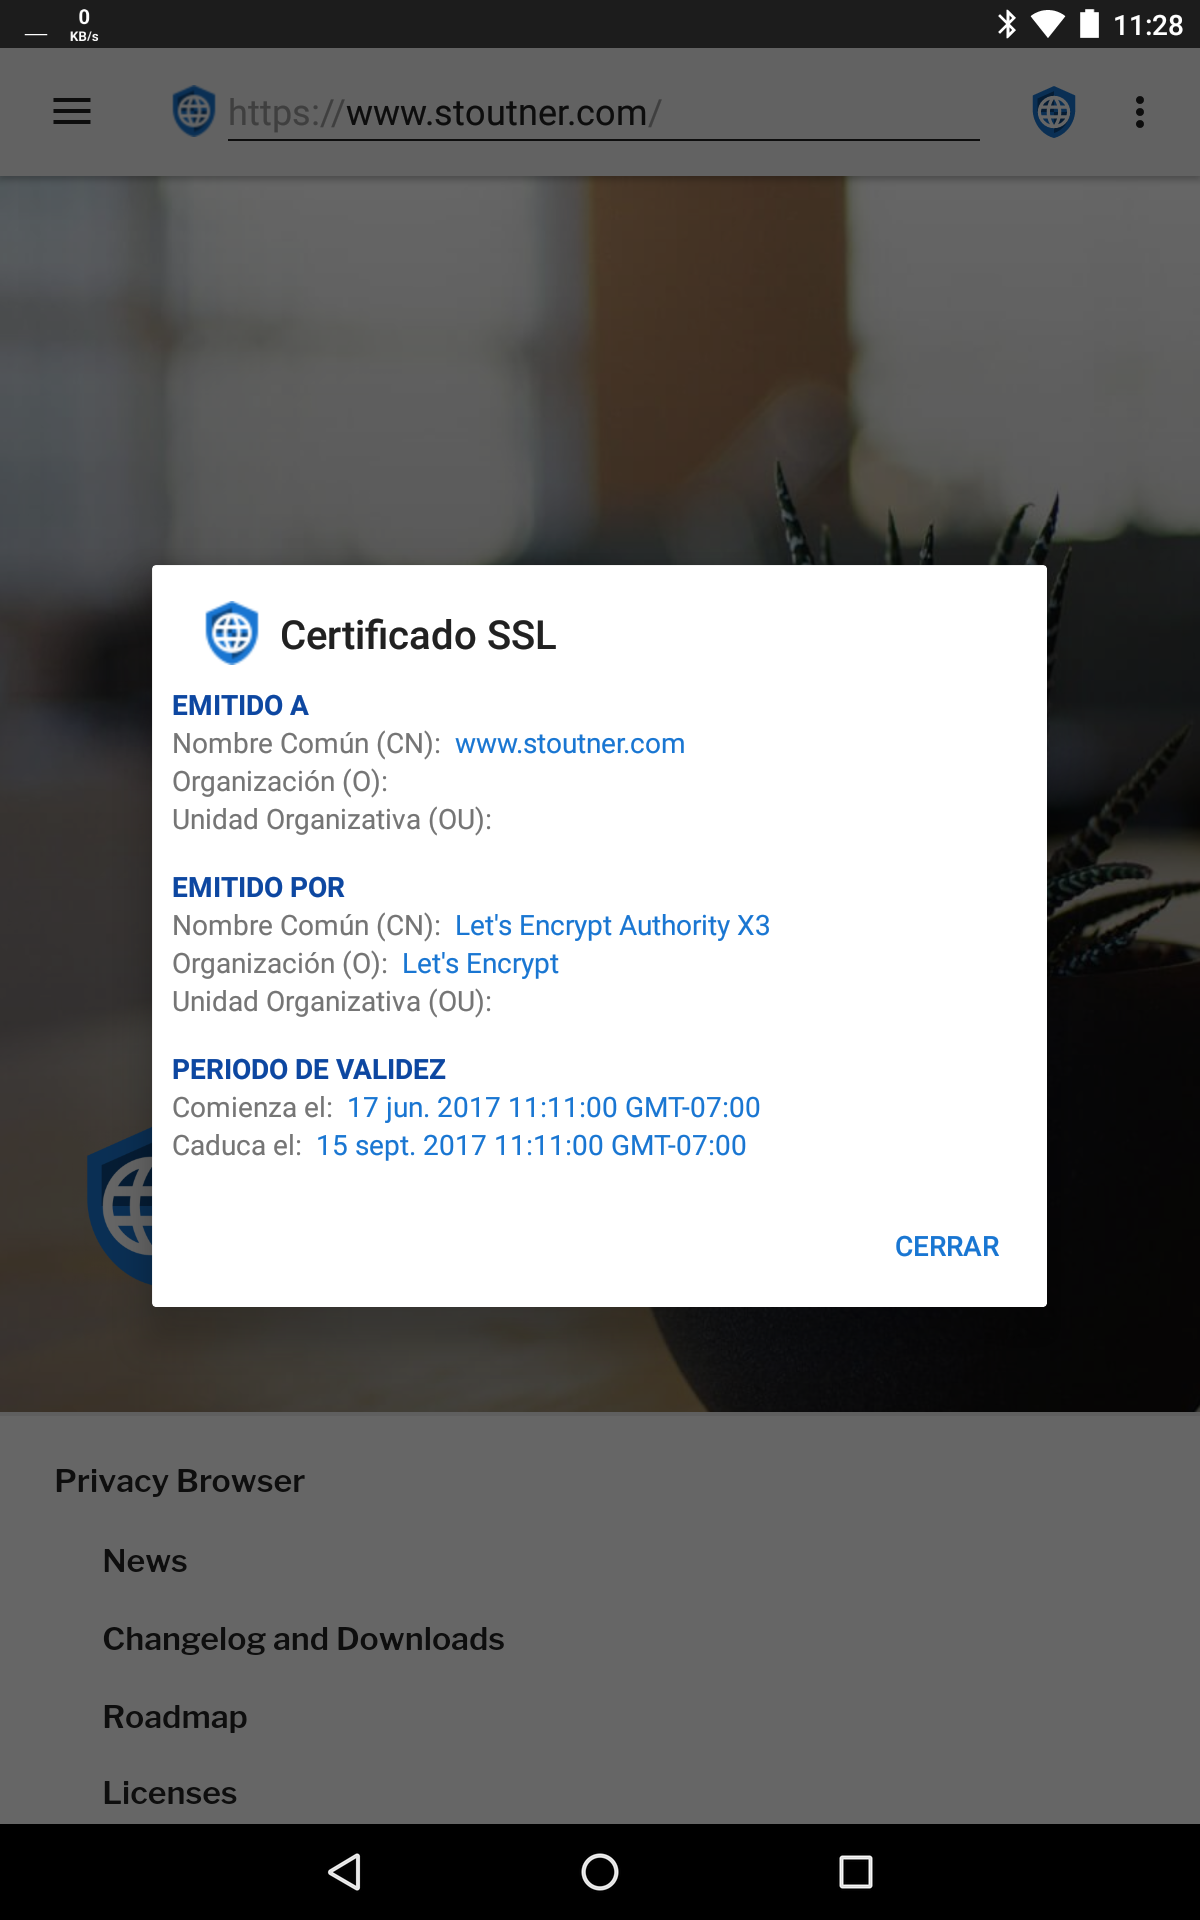 fastlane/metadata/android/es/sevenInchScreenshots/01 - View SSL Certificate - es.png